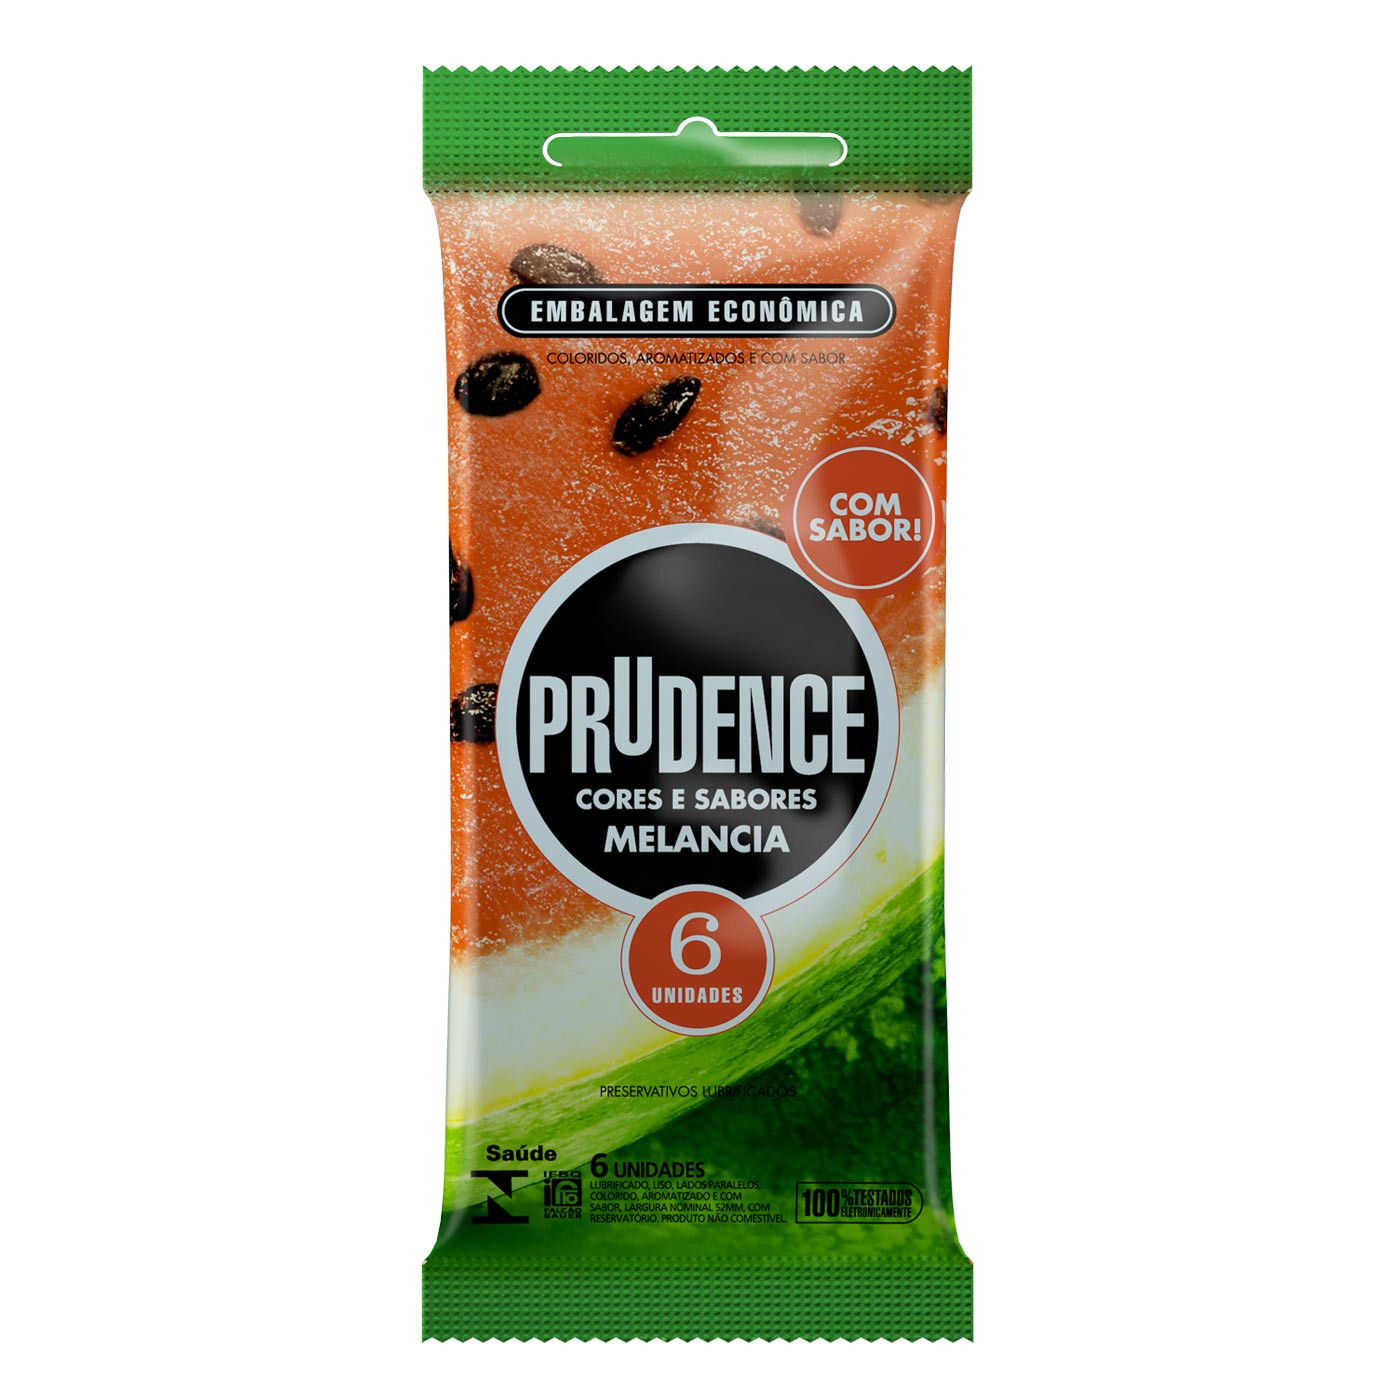 Preservativo Prudence Cores e Sabores - Melancia - 6 Unidades